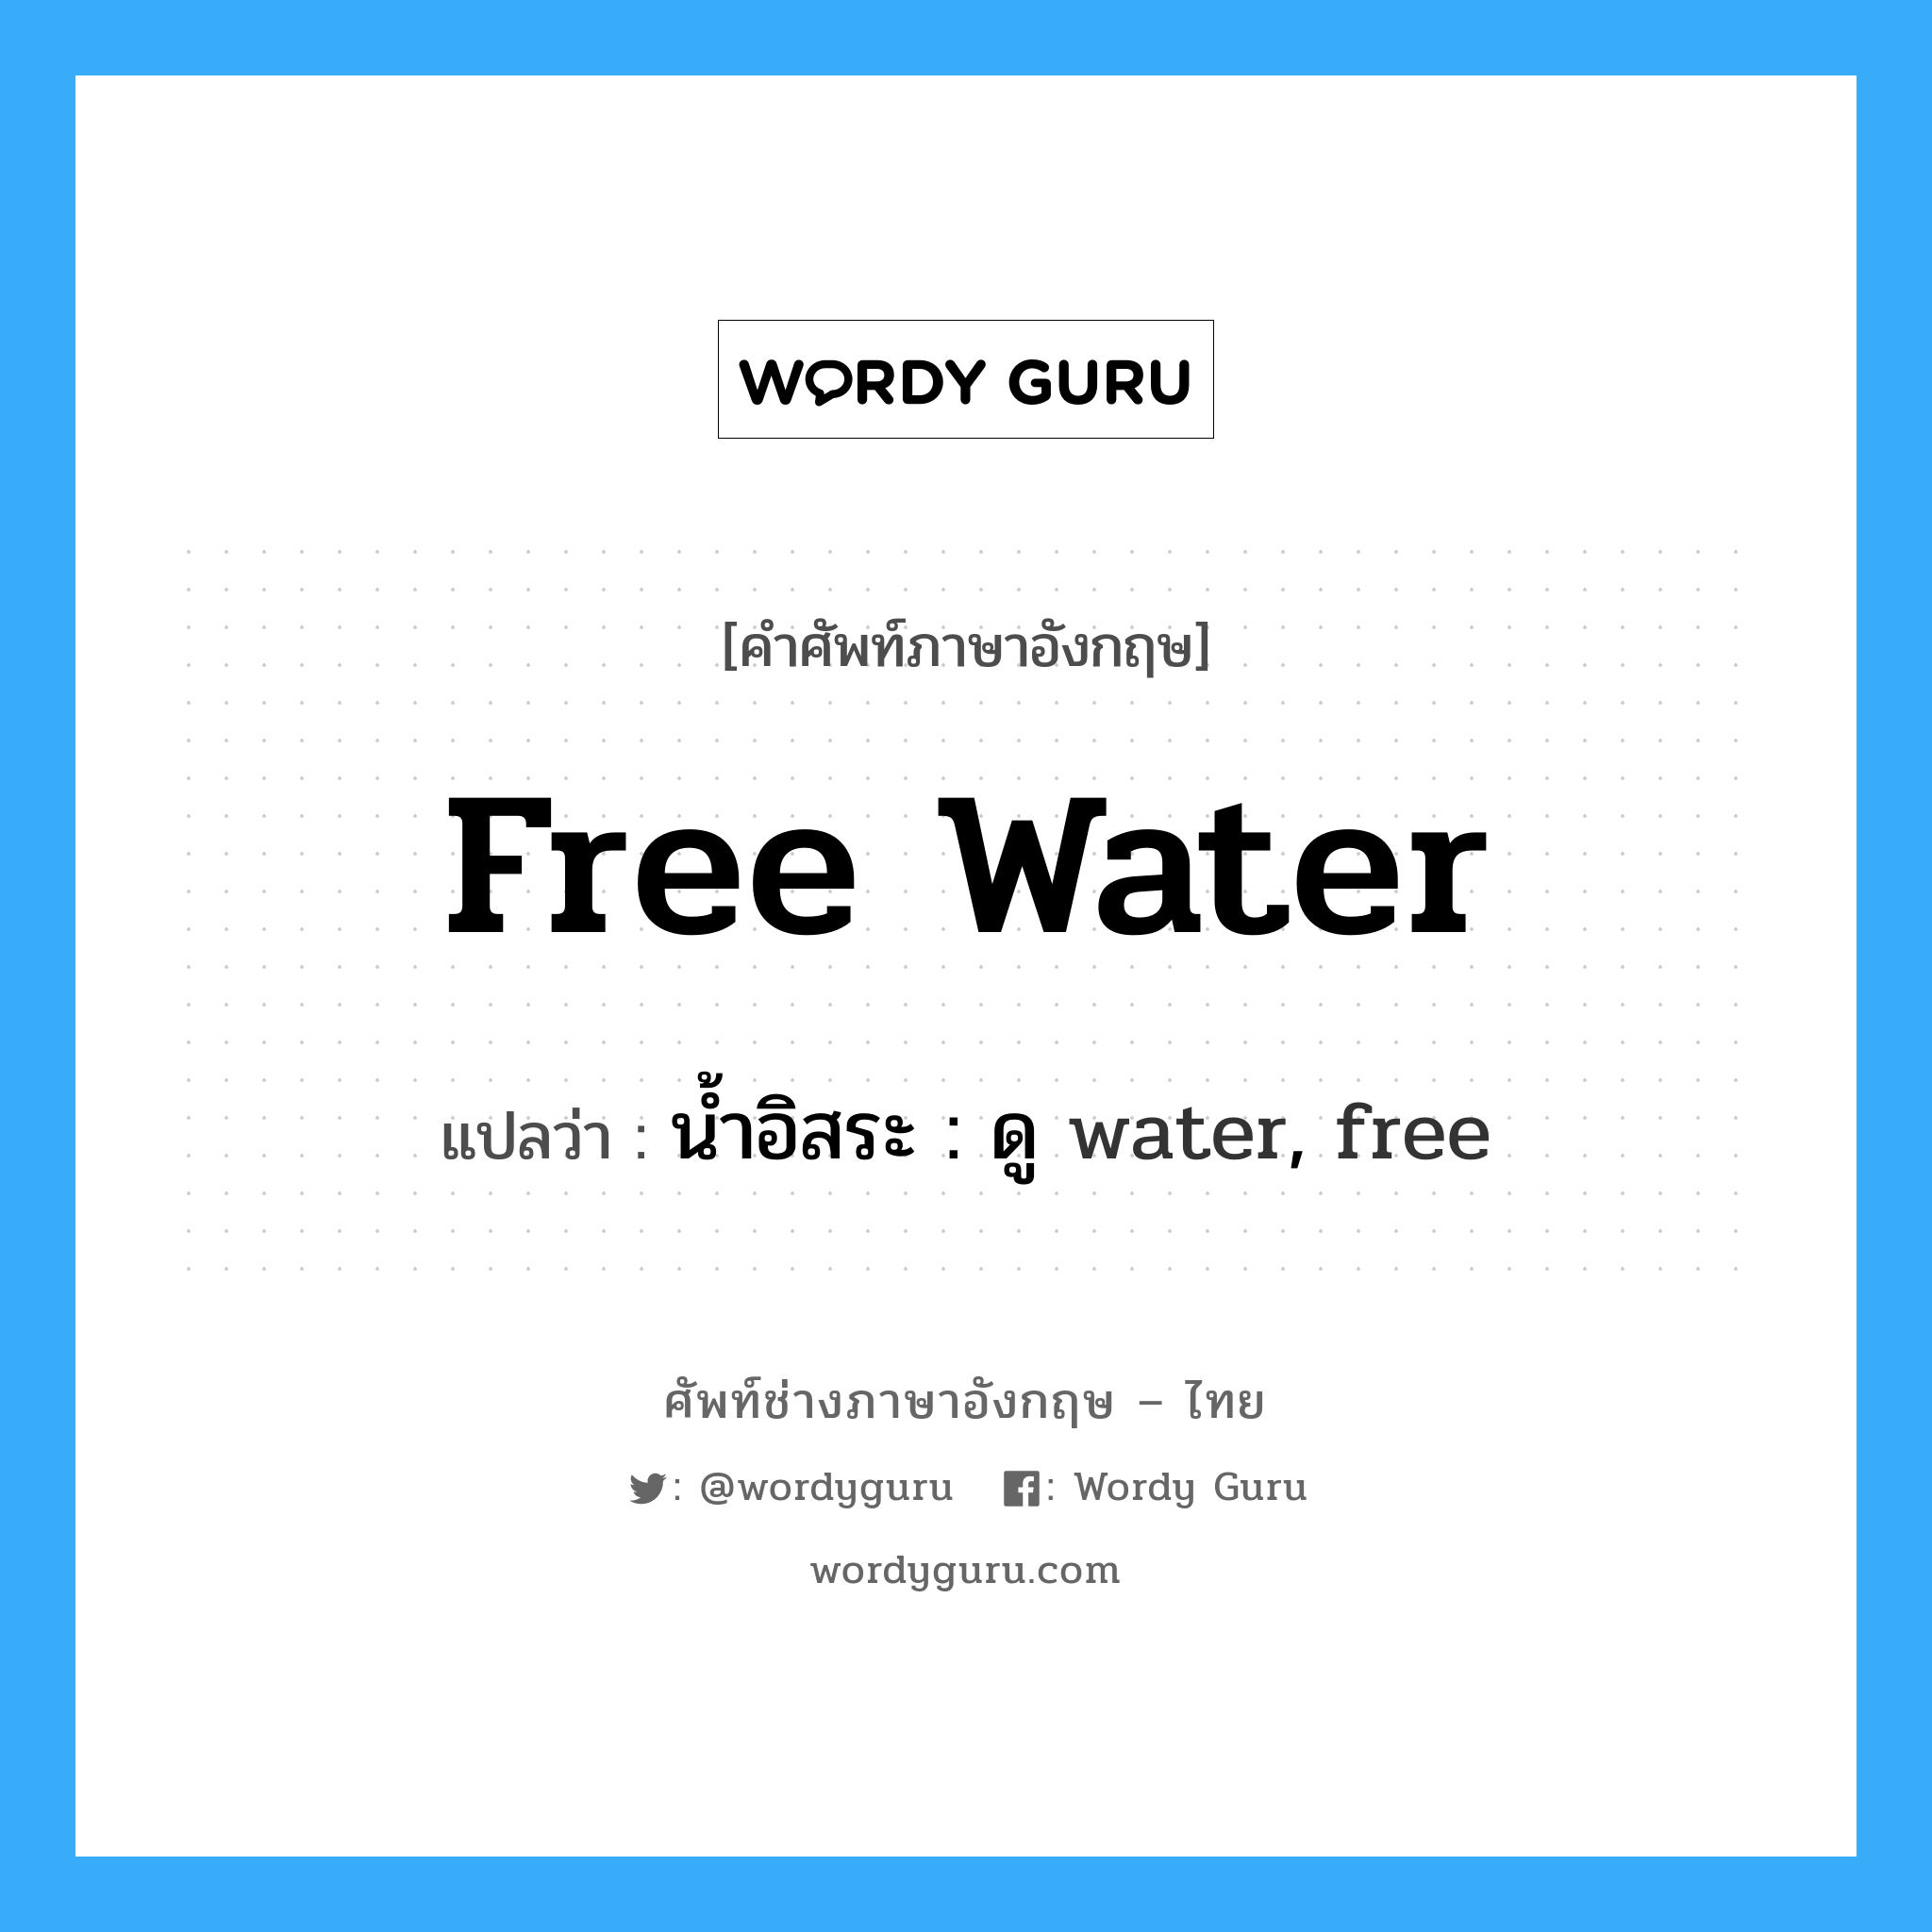 น้ำอิสระ : ดู water, free ภาษาอังกฤษ?, คำศัพท์ช่างภาษาอังกฤษ - ไทย น้ำอิสระ : ดู water, free คำศัพท์ภาษาอังกฤษ น้ำอิสระ : ดู water, free แปลว่า free water